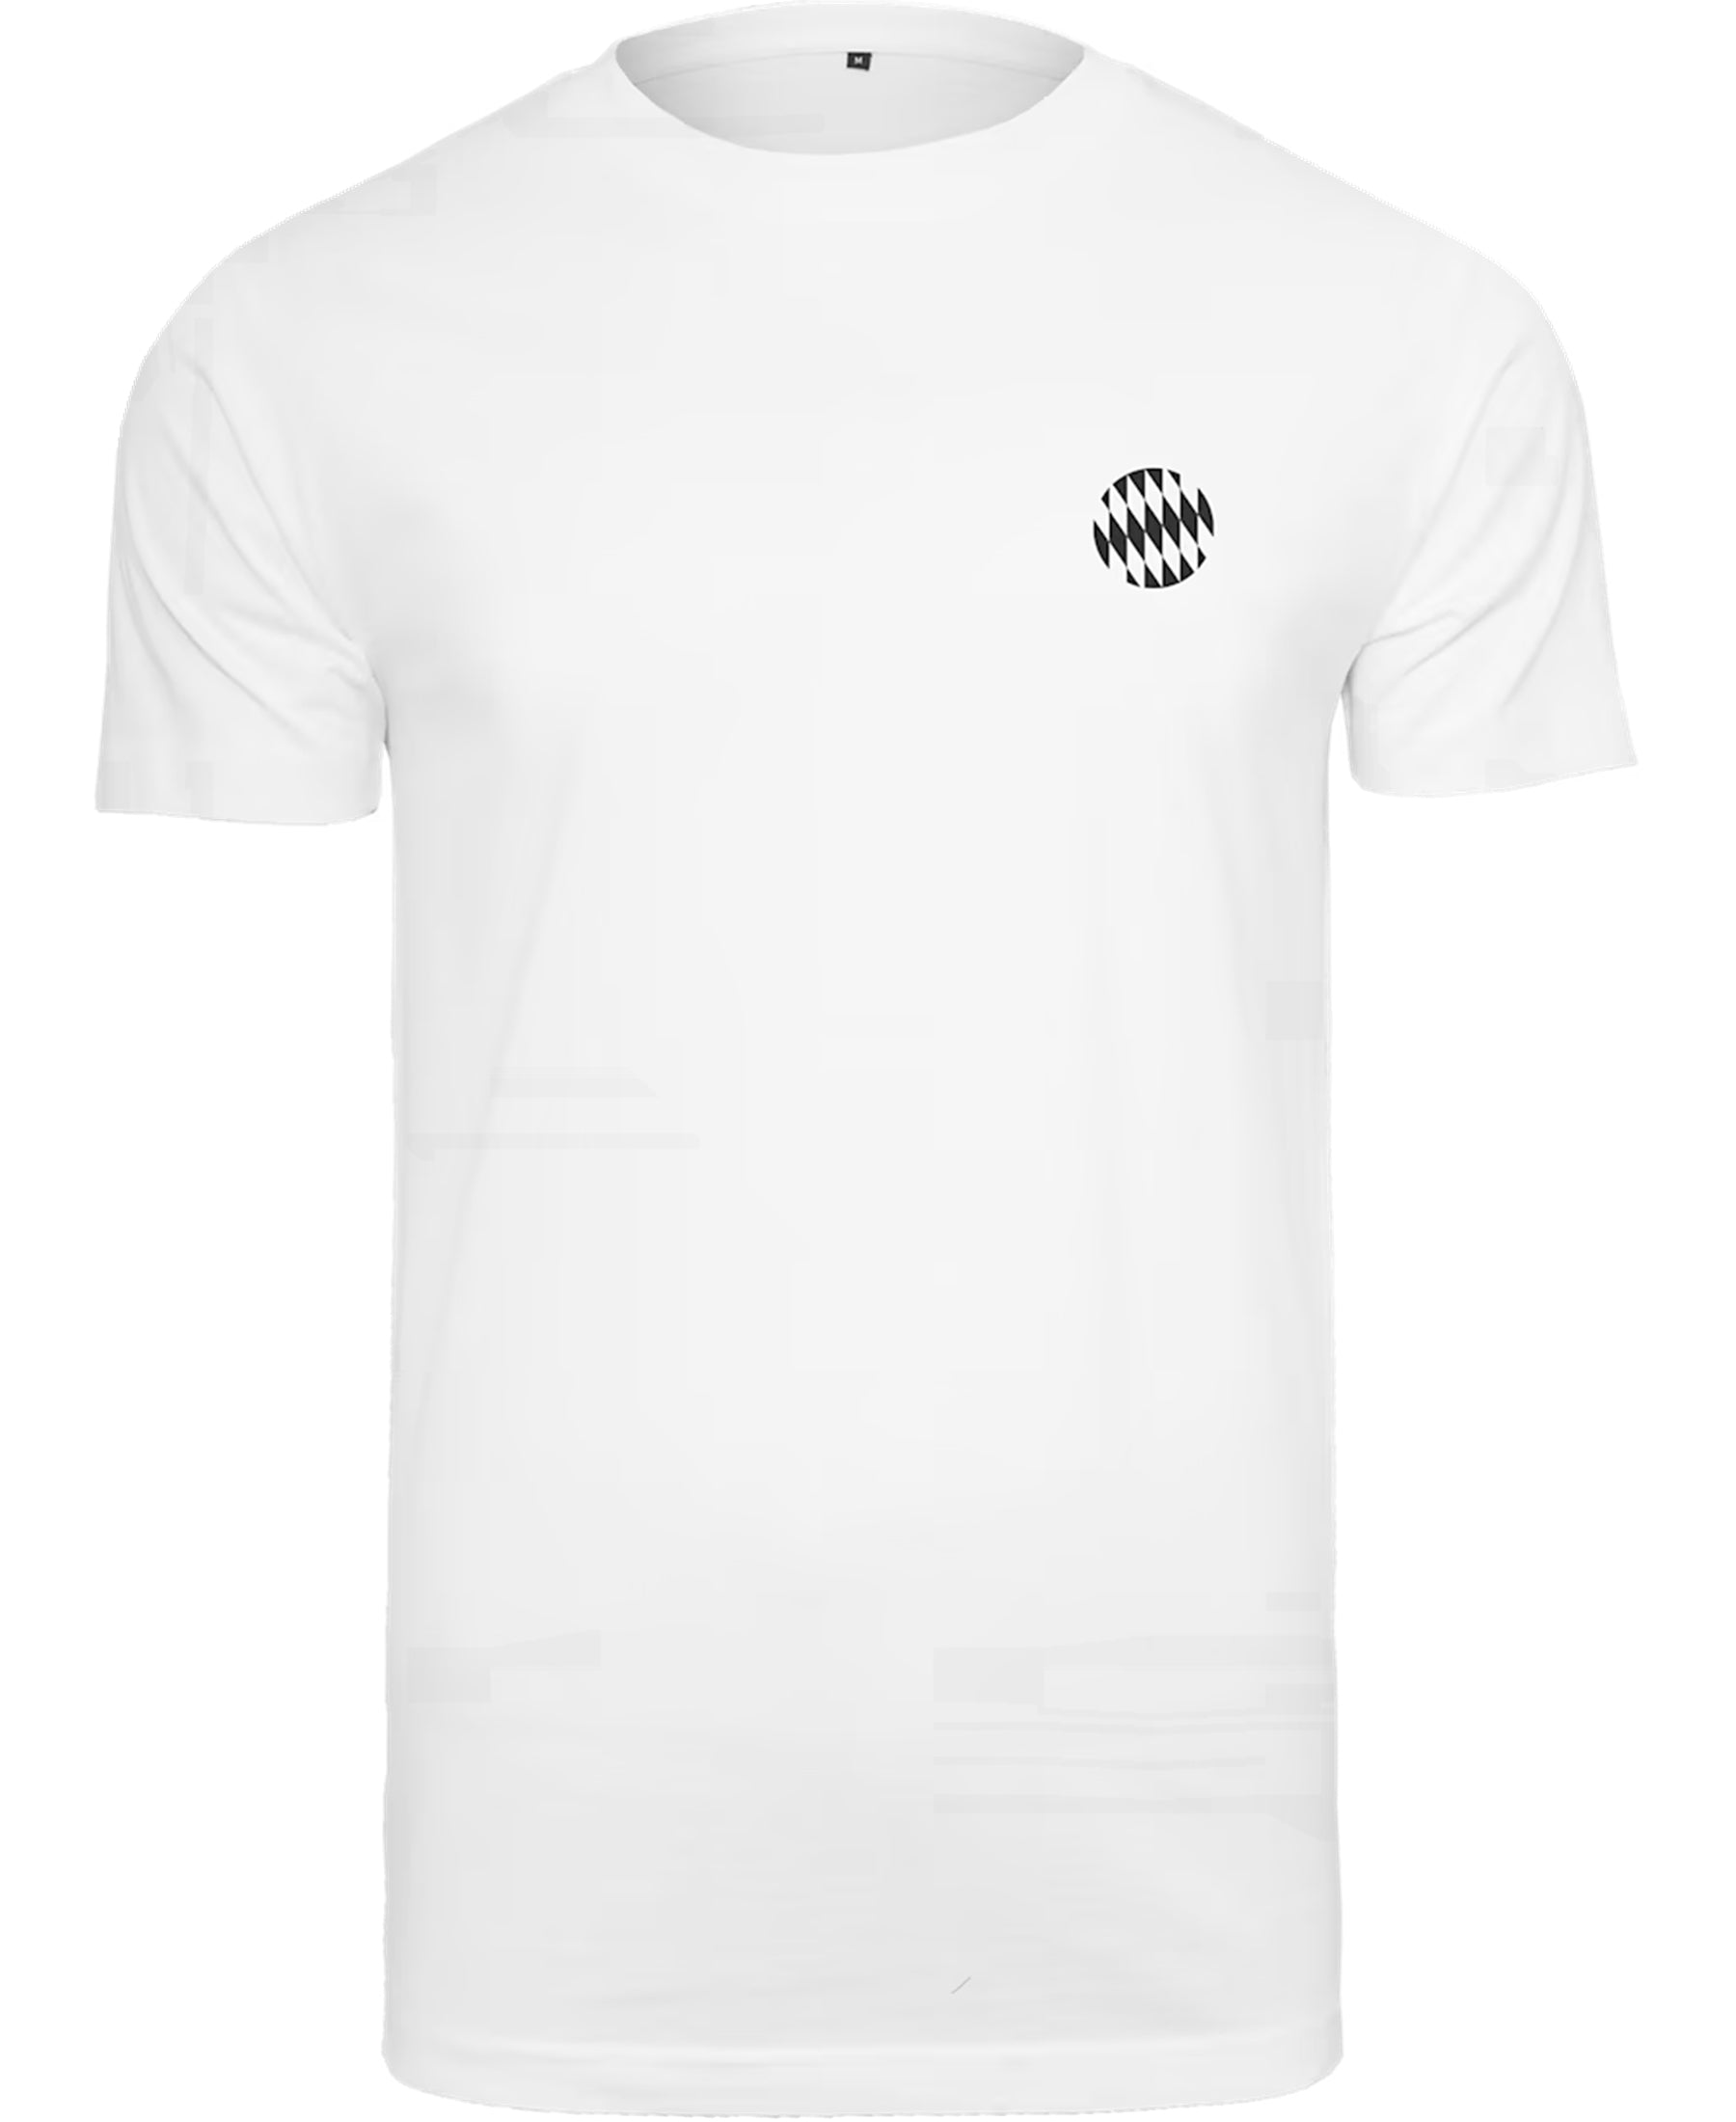 Das FC Bayern München FCB Graphic T-Shirt (33561) ist ein Must-have für jeden Fan. Mit seinem auffälligen Design und den hochwertigen Materialien ist es nicht nur ein Blickfang, sondern auch angenehm zu tragen. Zeigen Sie Ihre Unterstützung für den FCB mit diesem stylischen Shirt von SHOP4TEAMSPORT.